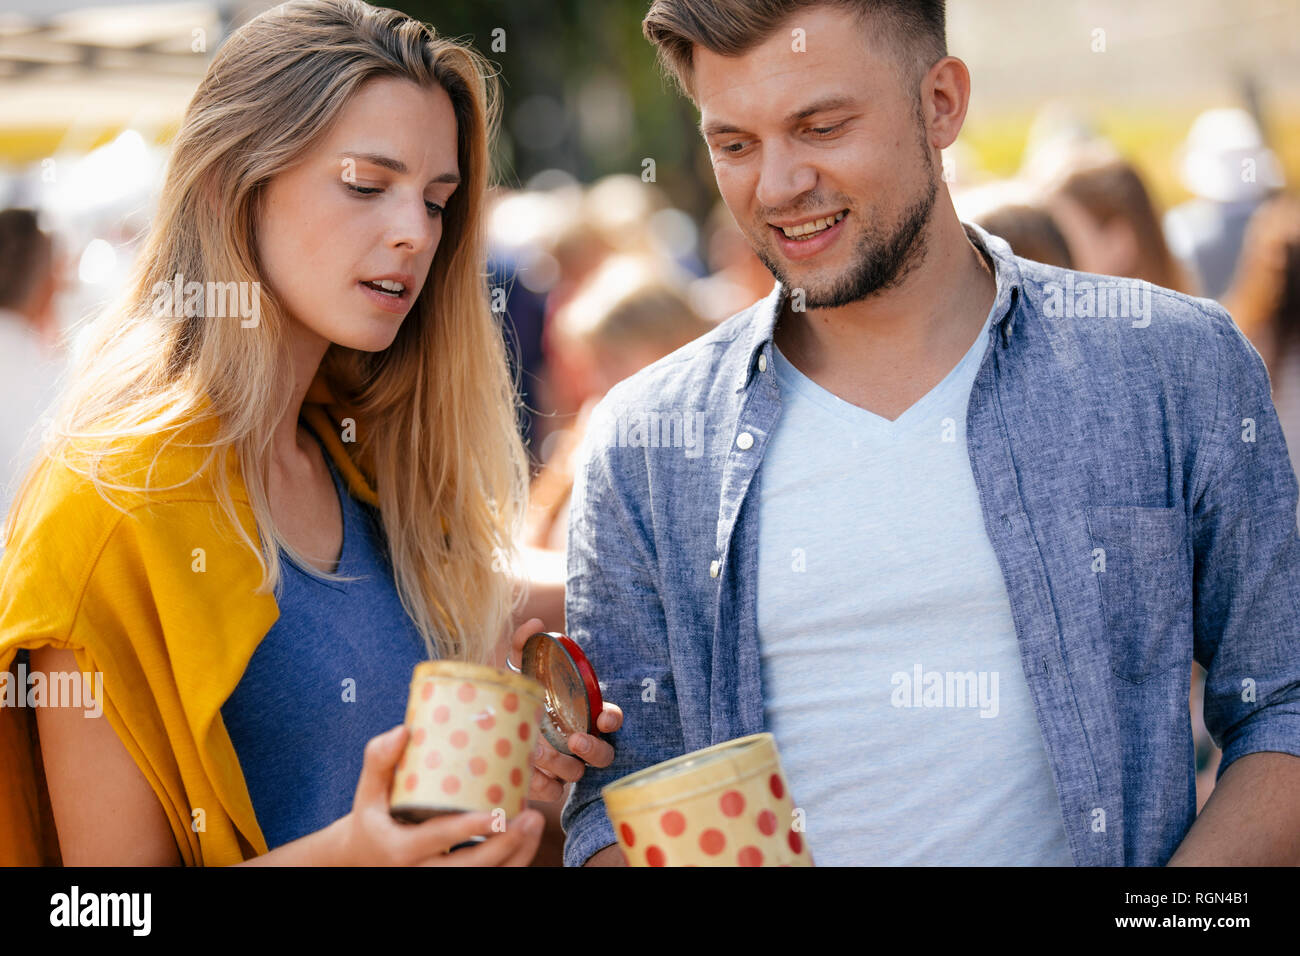 Belgique, Tongres, jeune couple avec des boîtes en fer sur un marché aux puces d'antiquités Banque D'Images